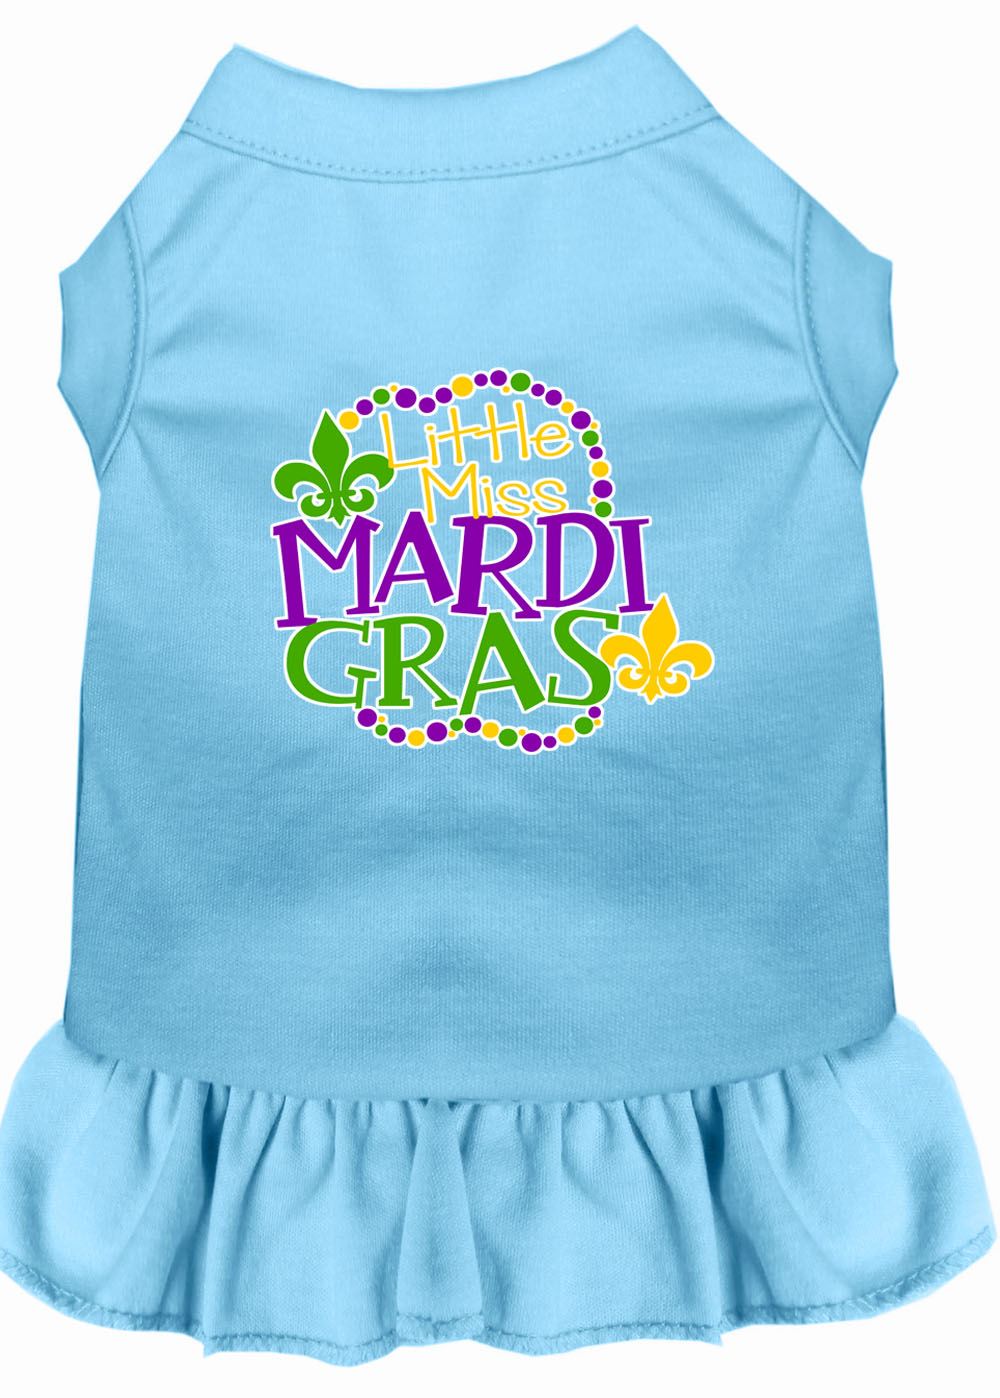 Miss Mardi Gras Screen Print Mardi Gras Dog Dress Baby Blue XS